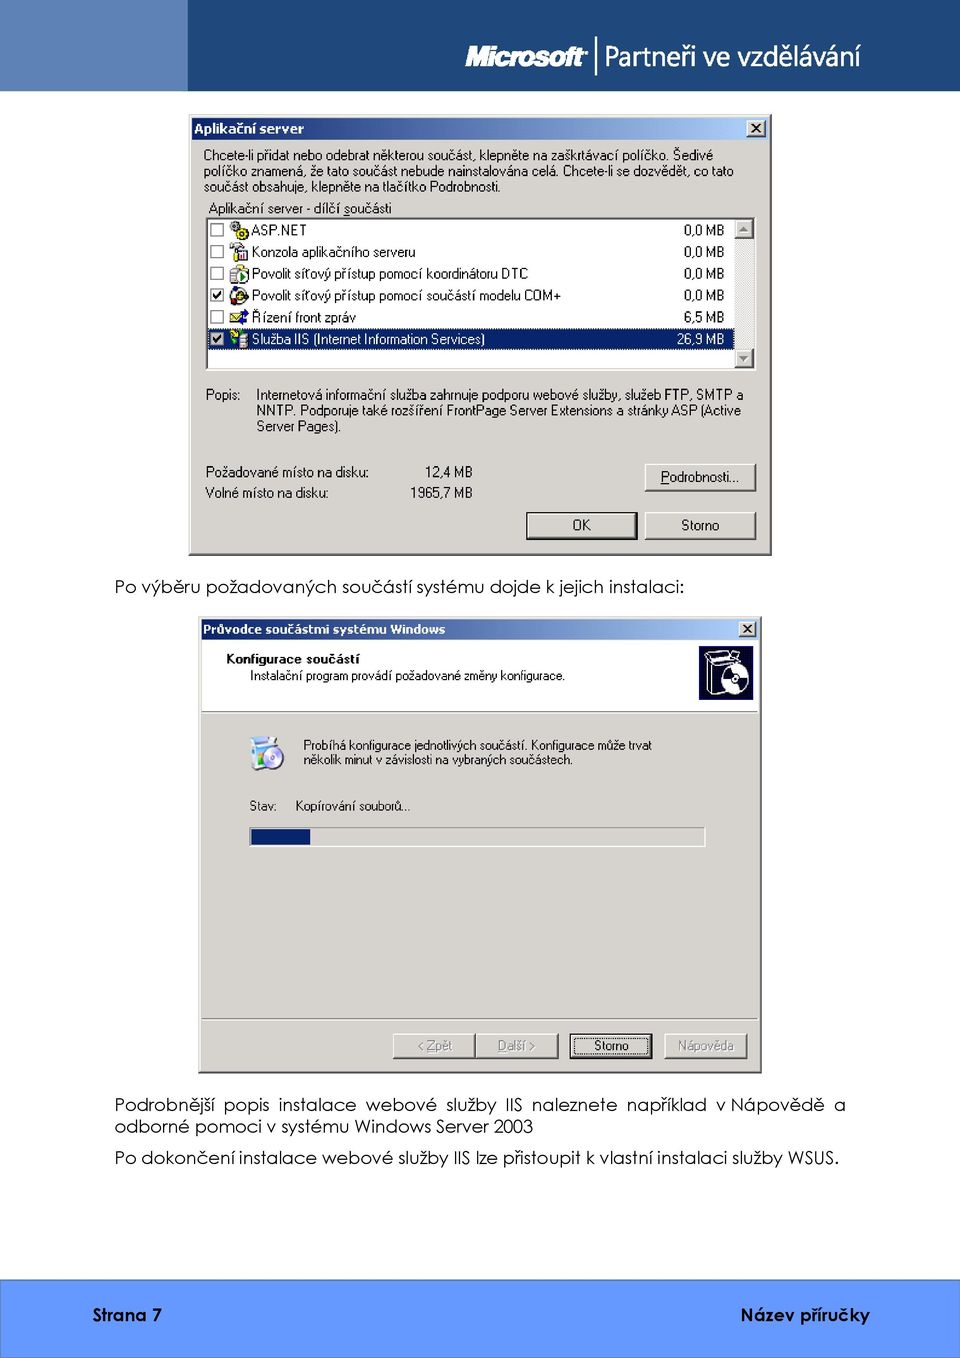 Nápovědě a odborné pomoci v systému Windows Server 2003 Po dokončení